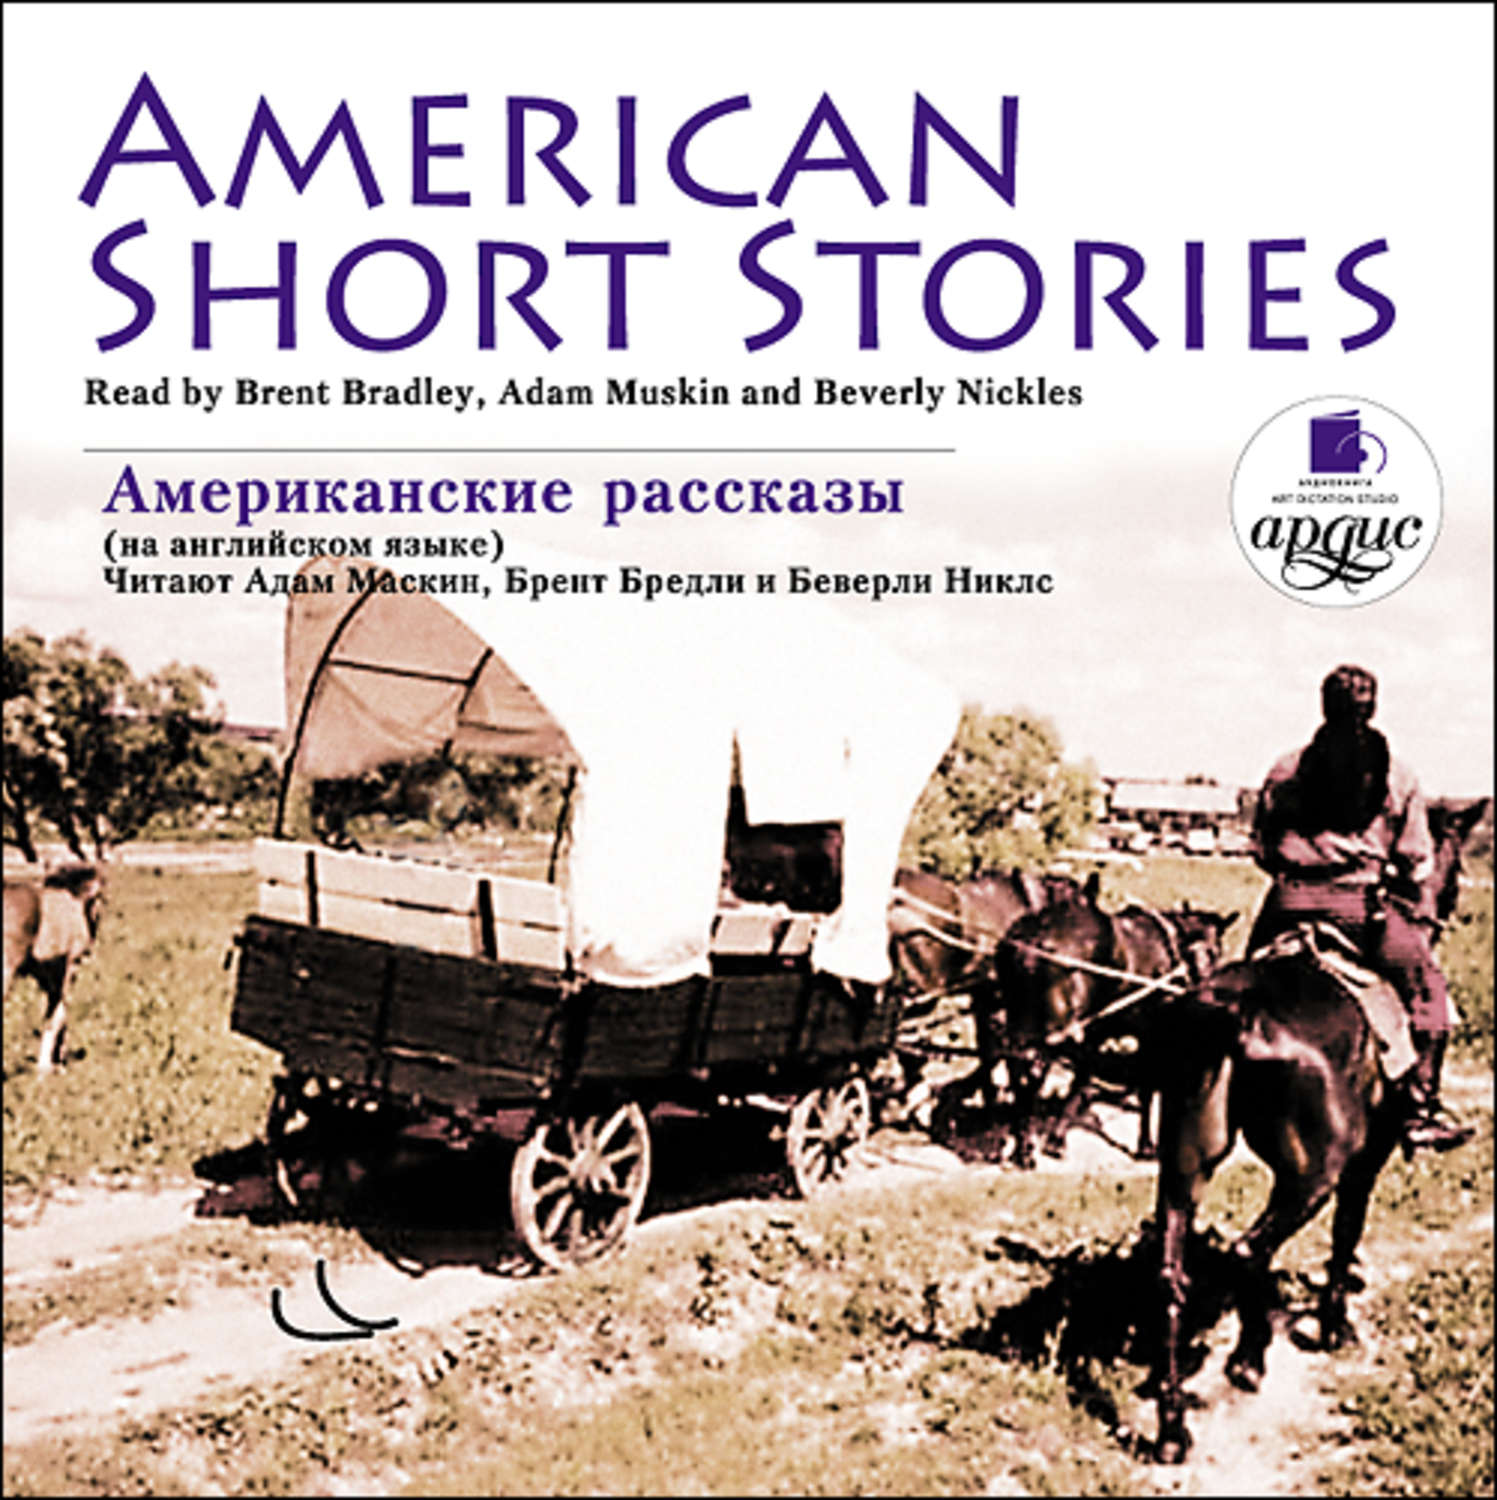 Рассказы американских писателей. Американские рассказы. American stories. “Американские рассказы” Арди. American shortenings.